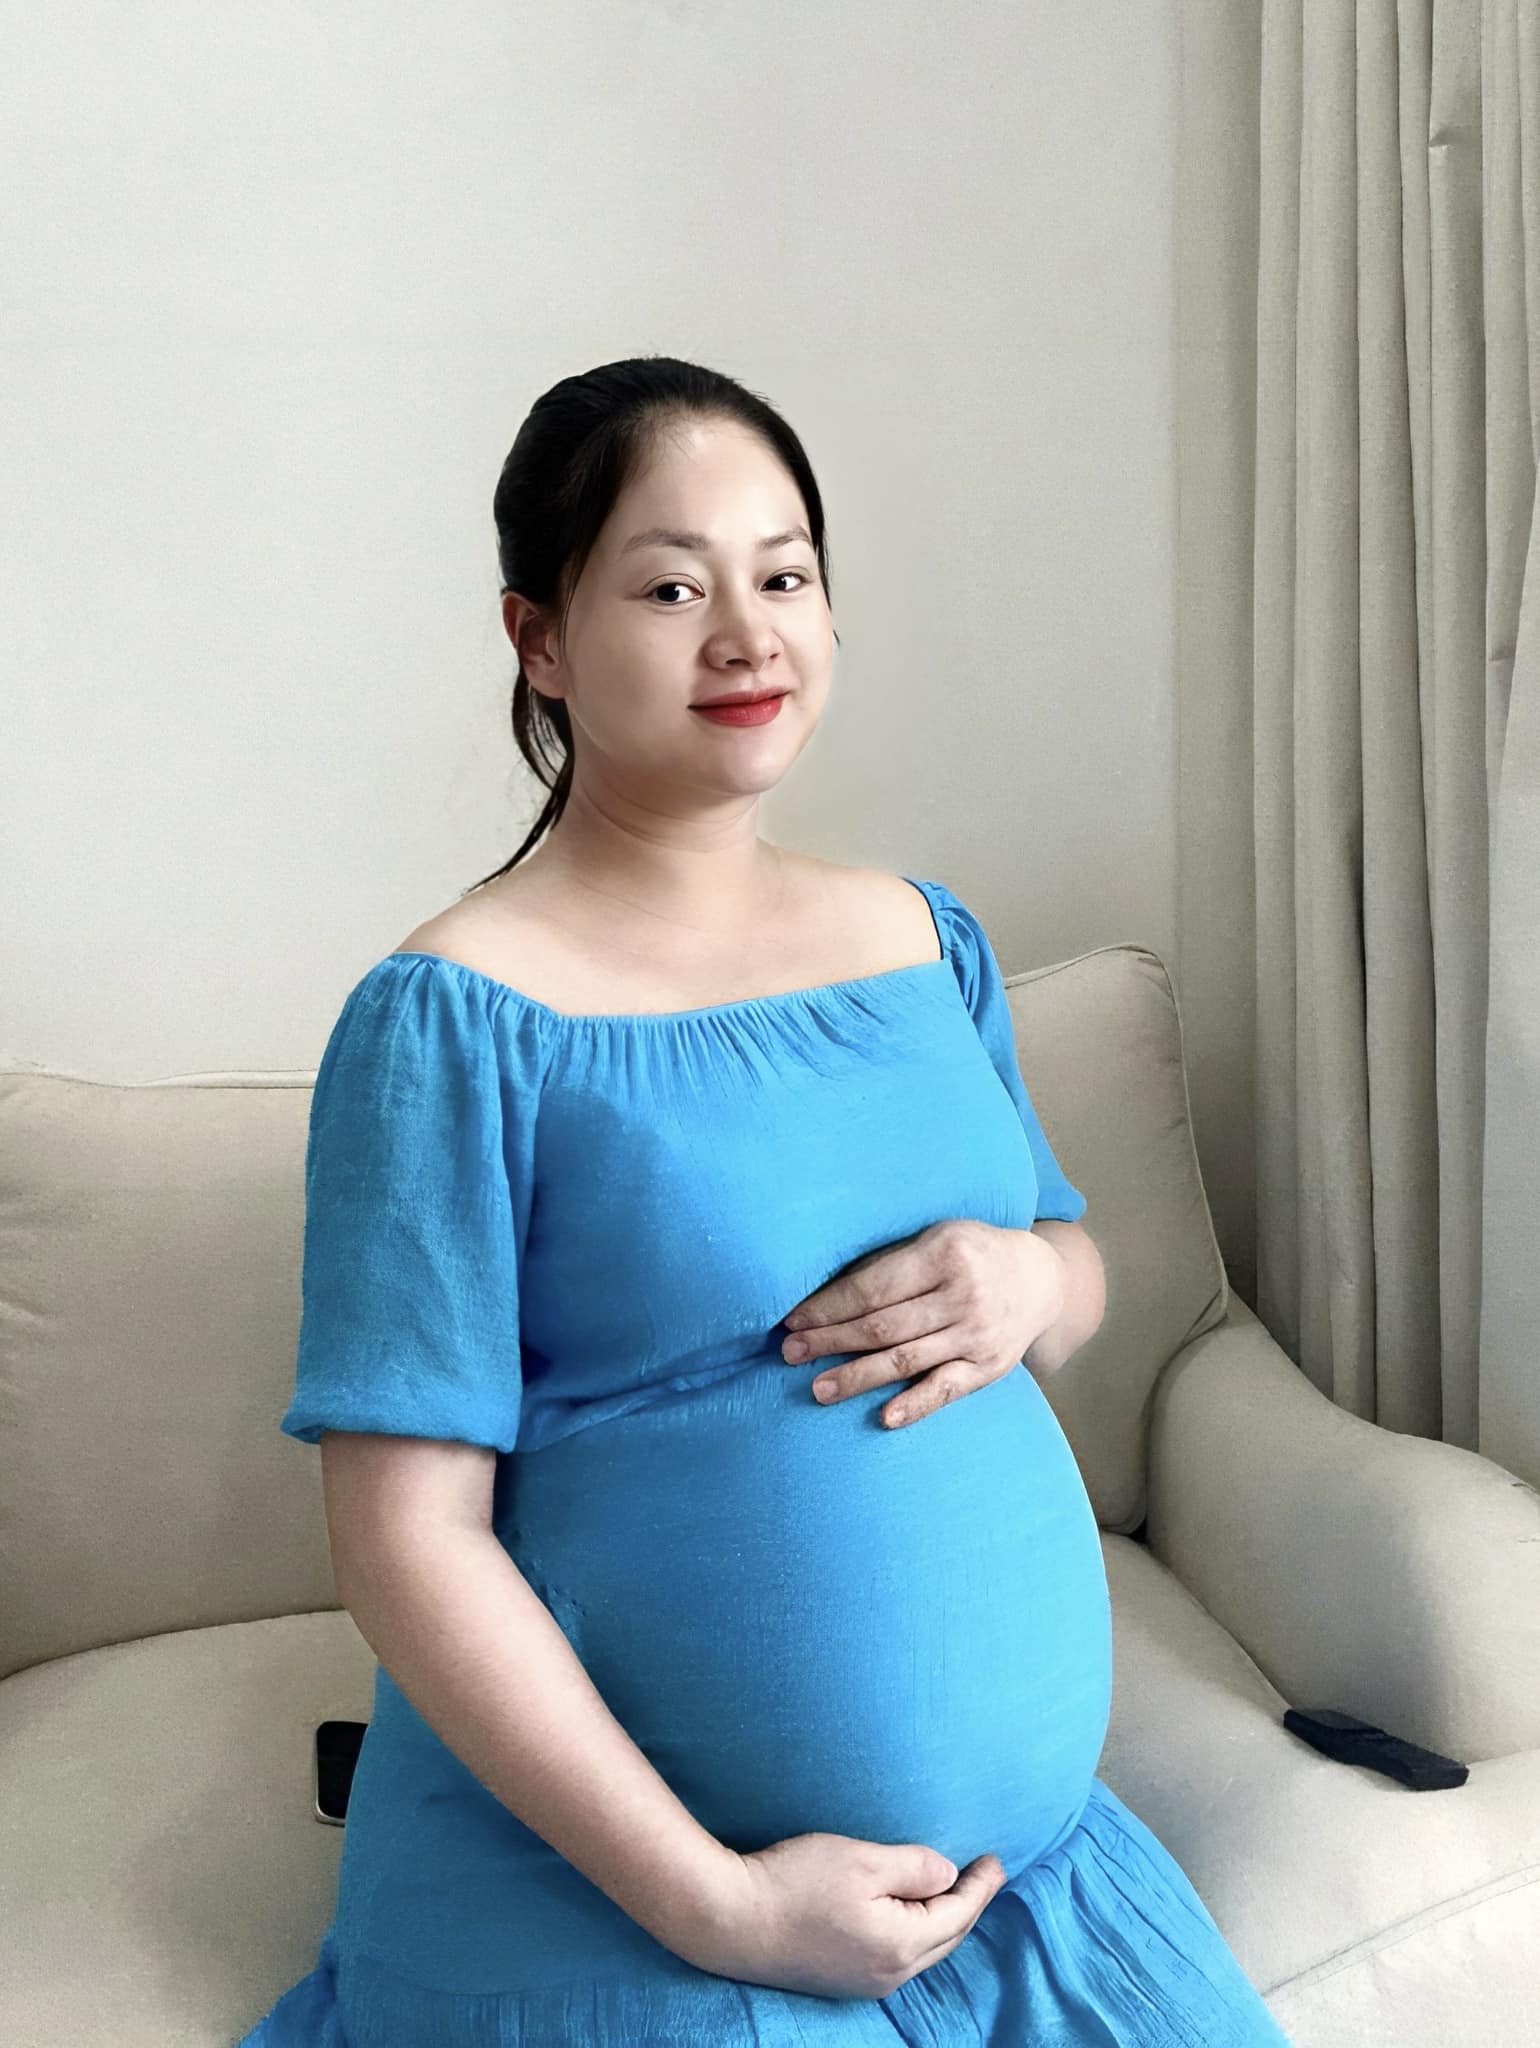 Diễn viên Lan Phương thông báo đã sinh con ở tuổi 41, tiết lộ điều trùng hợp khiến niềm vui nhân đôi-2